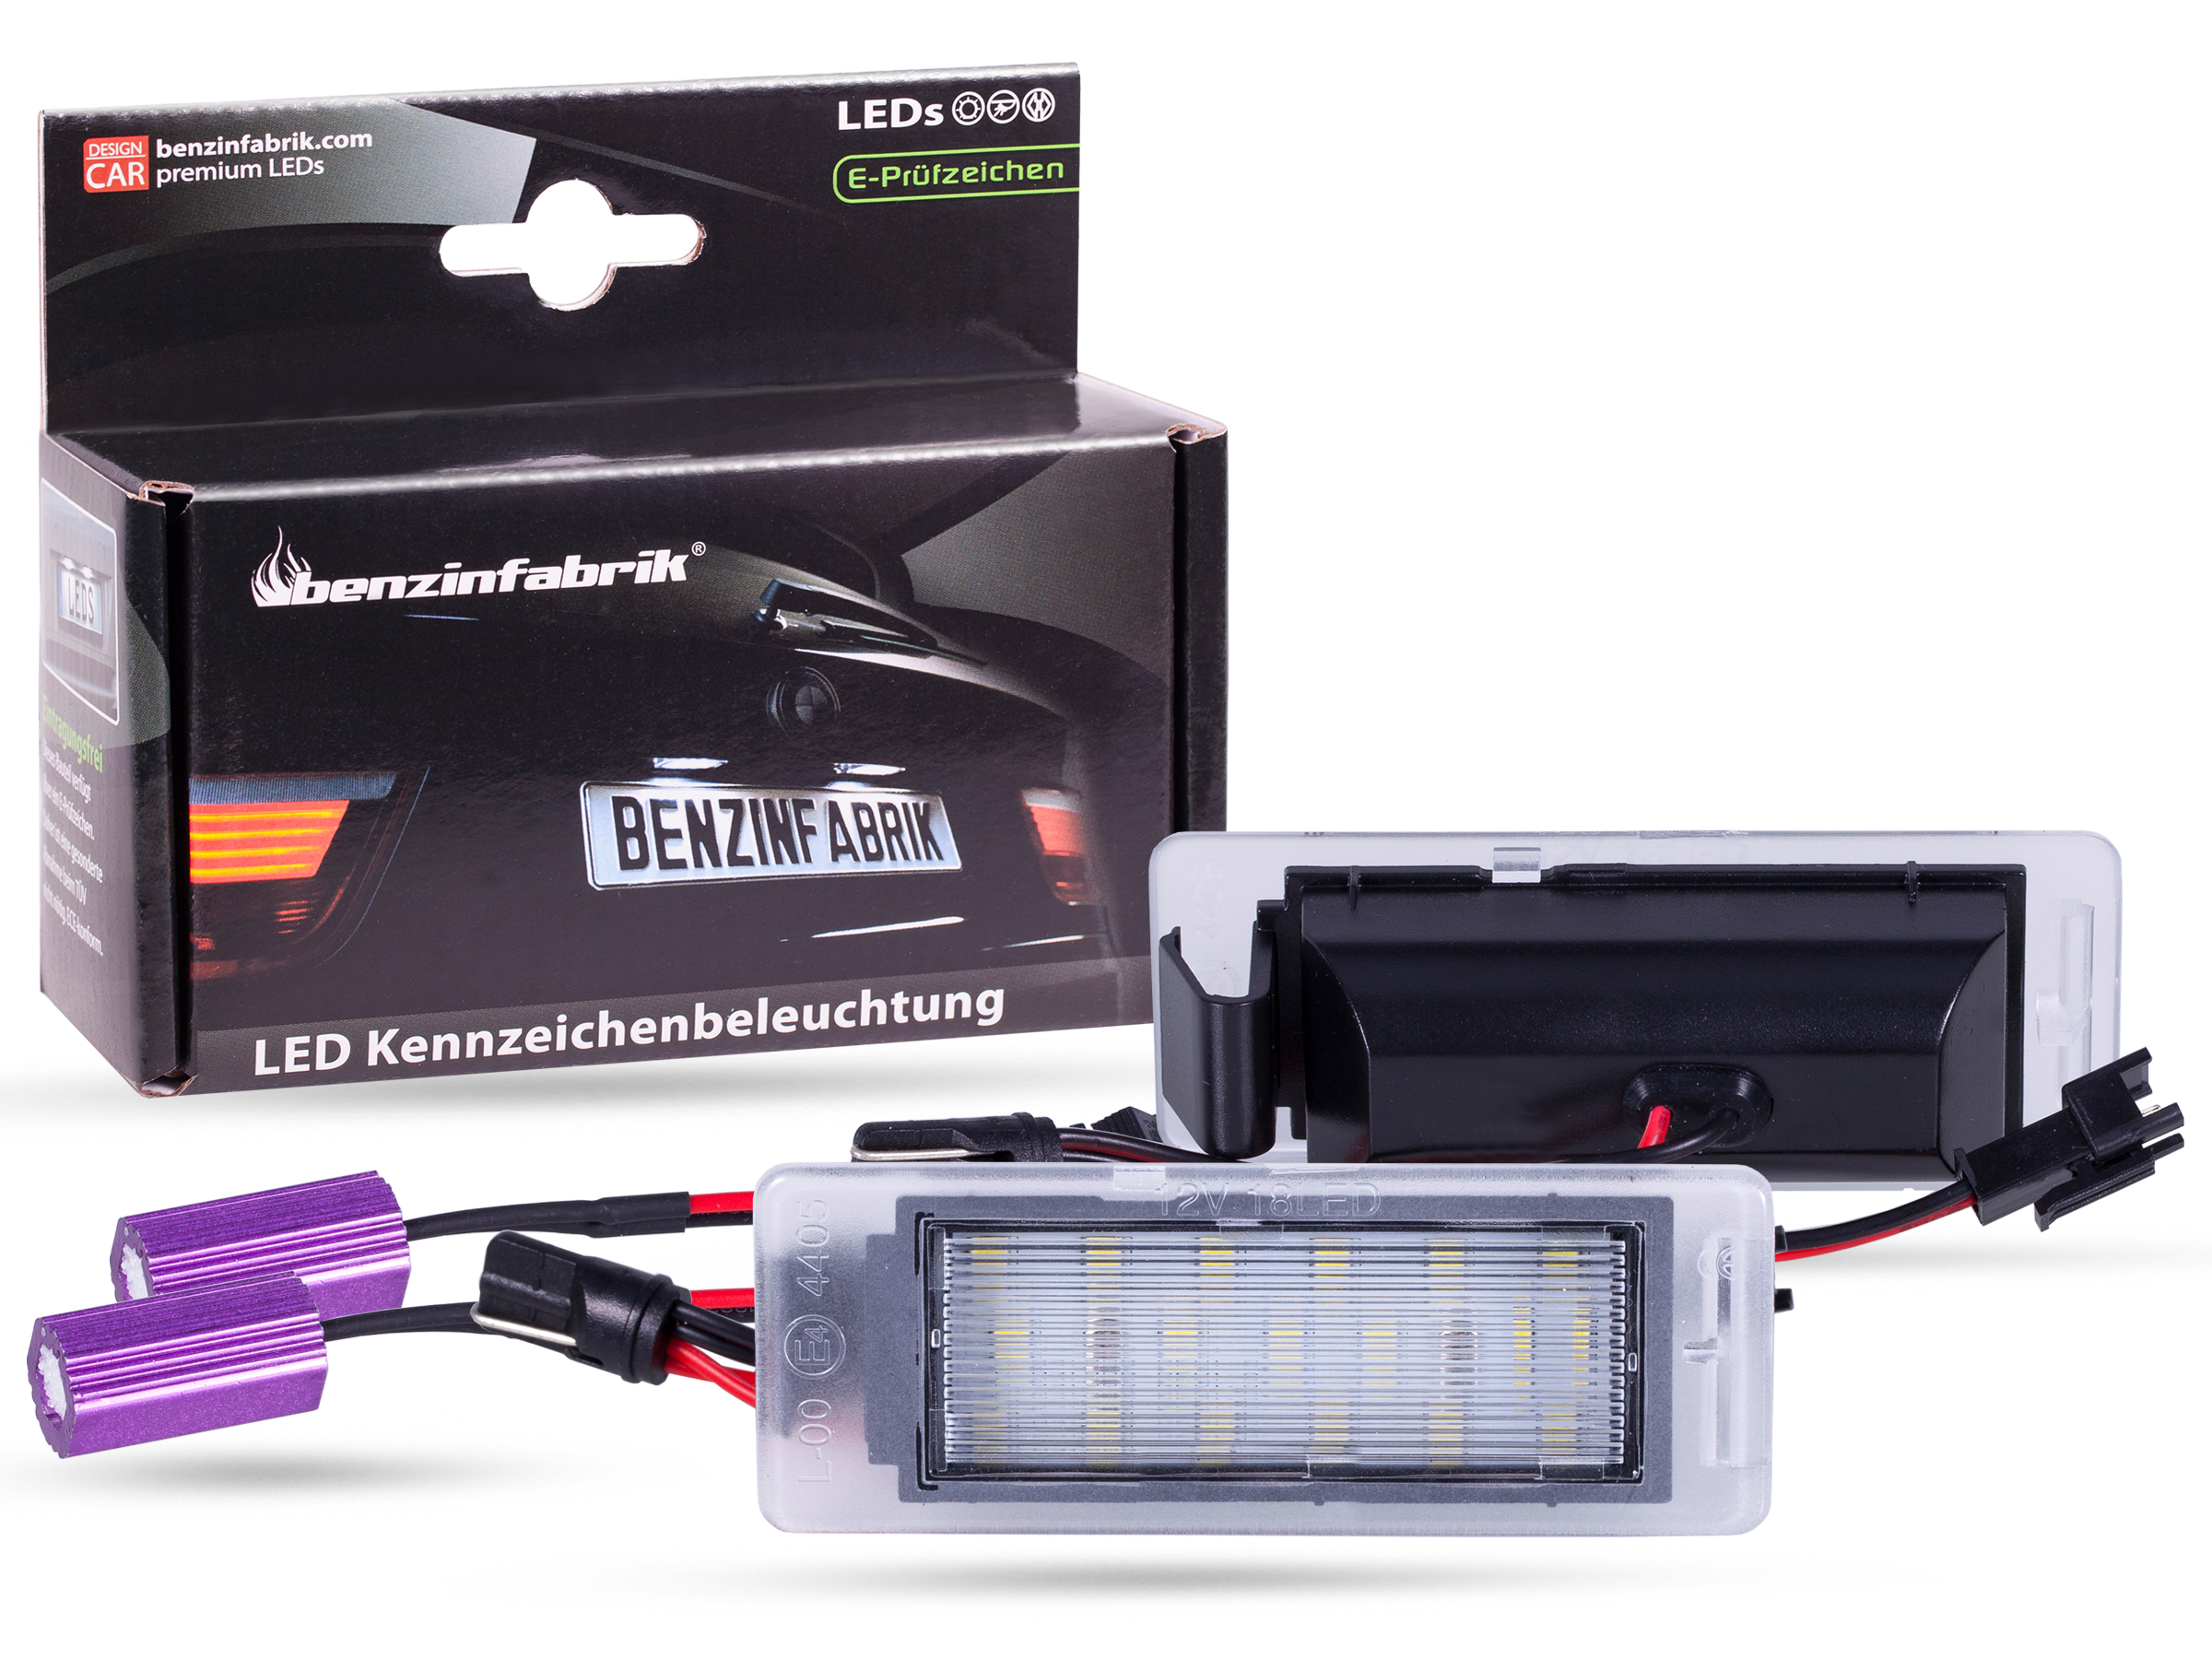 LED Kennzeichenbeleuchtung Module Chevrolet Camaro Bj.:10-13, mit